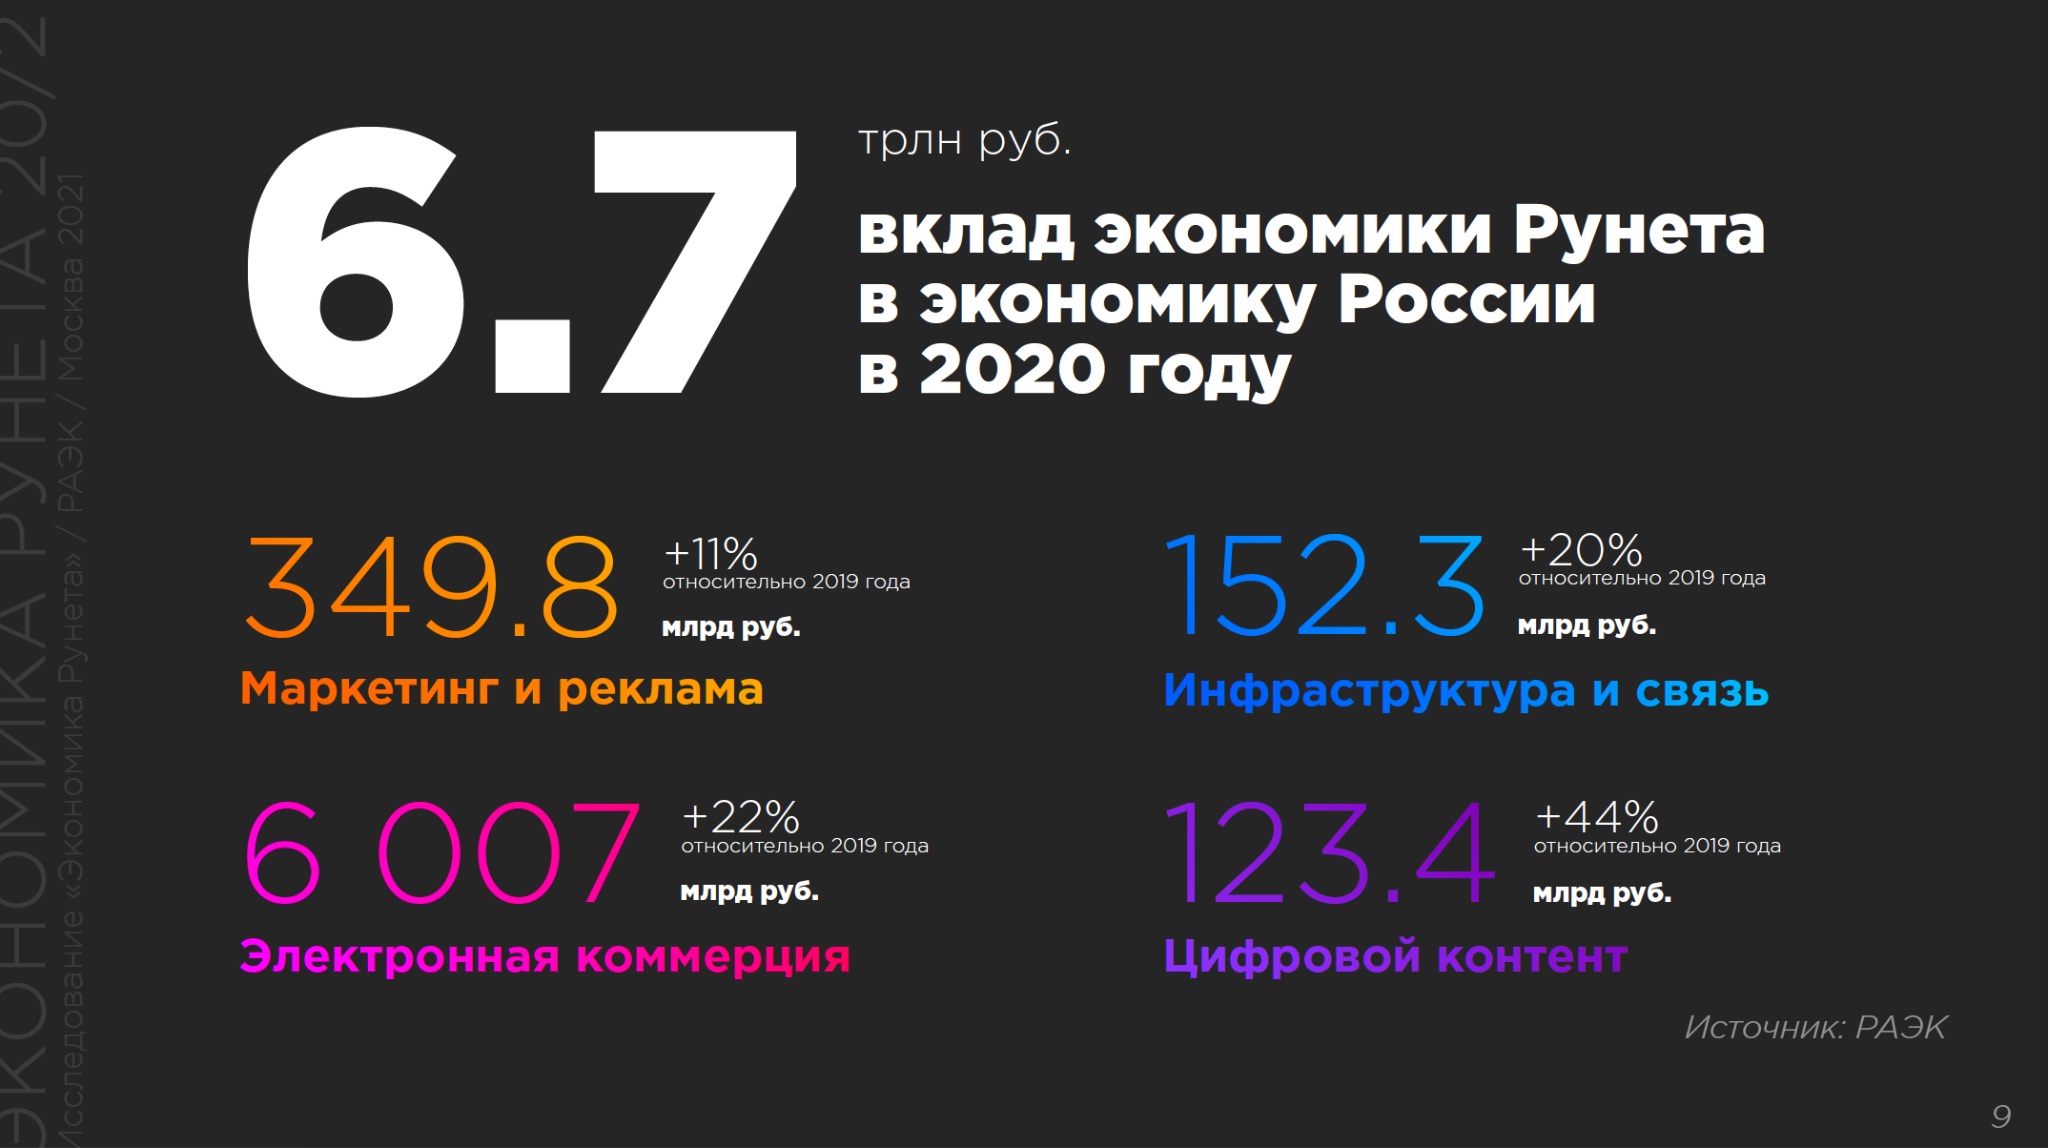 6 триллионов. Экономика рунета 2020. Вклад в экономику России. Вклад рунета в экономику России по годам. Ассоциация электронных коммуникаций (РАЭК).